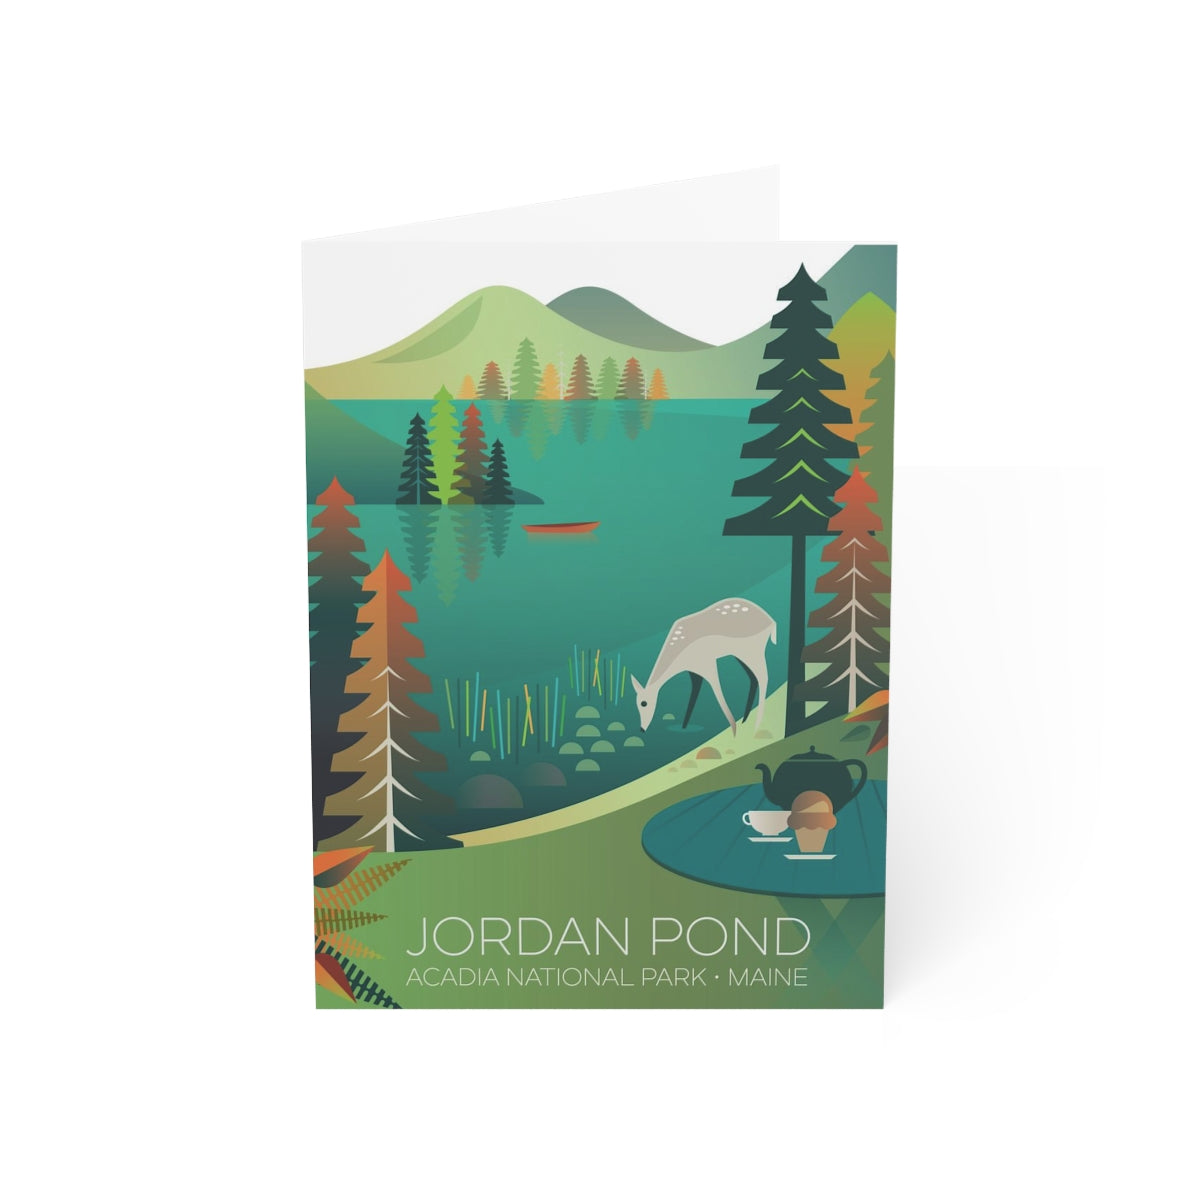 Parc national Acadia, Jordan Pond Cartes de notes mates pliées + enveloppes (10 pièces)